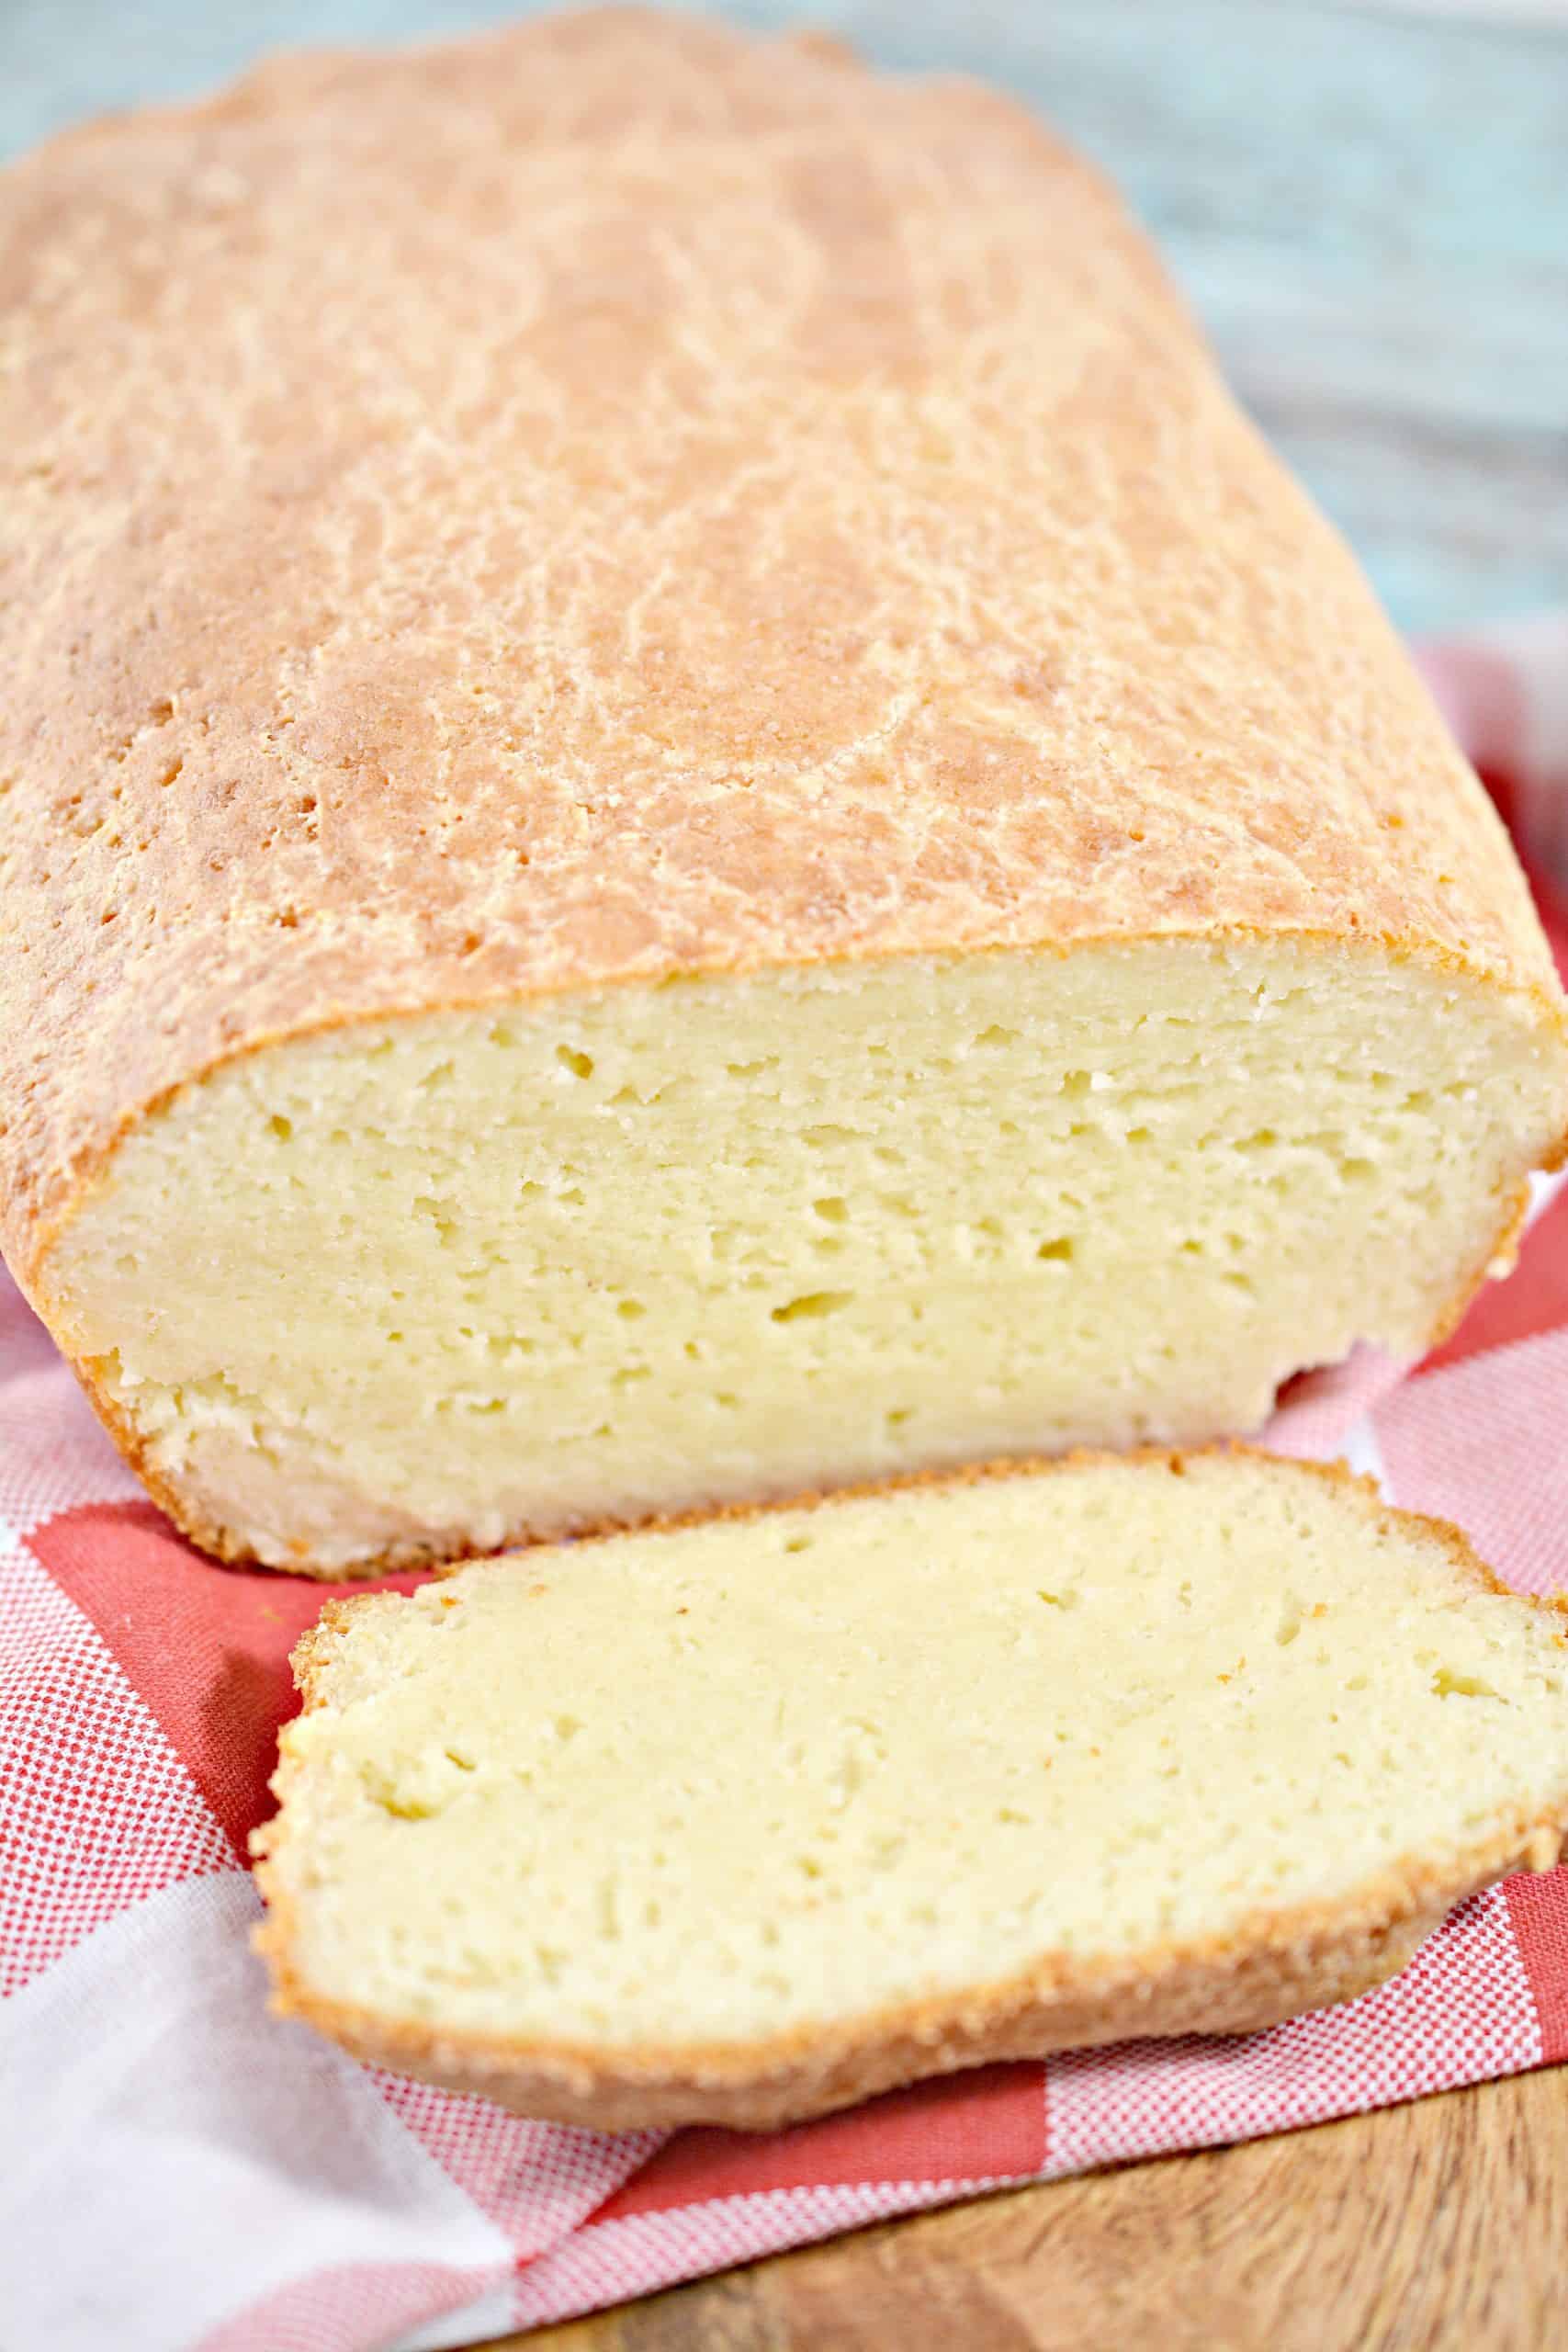 keto bread recipe, the best keto bread recipe ever, easy keto bread recipe, keto bread recipe with almond flour